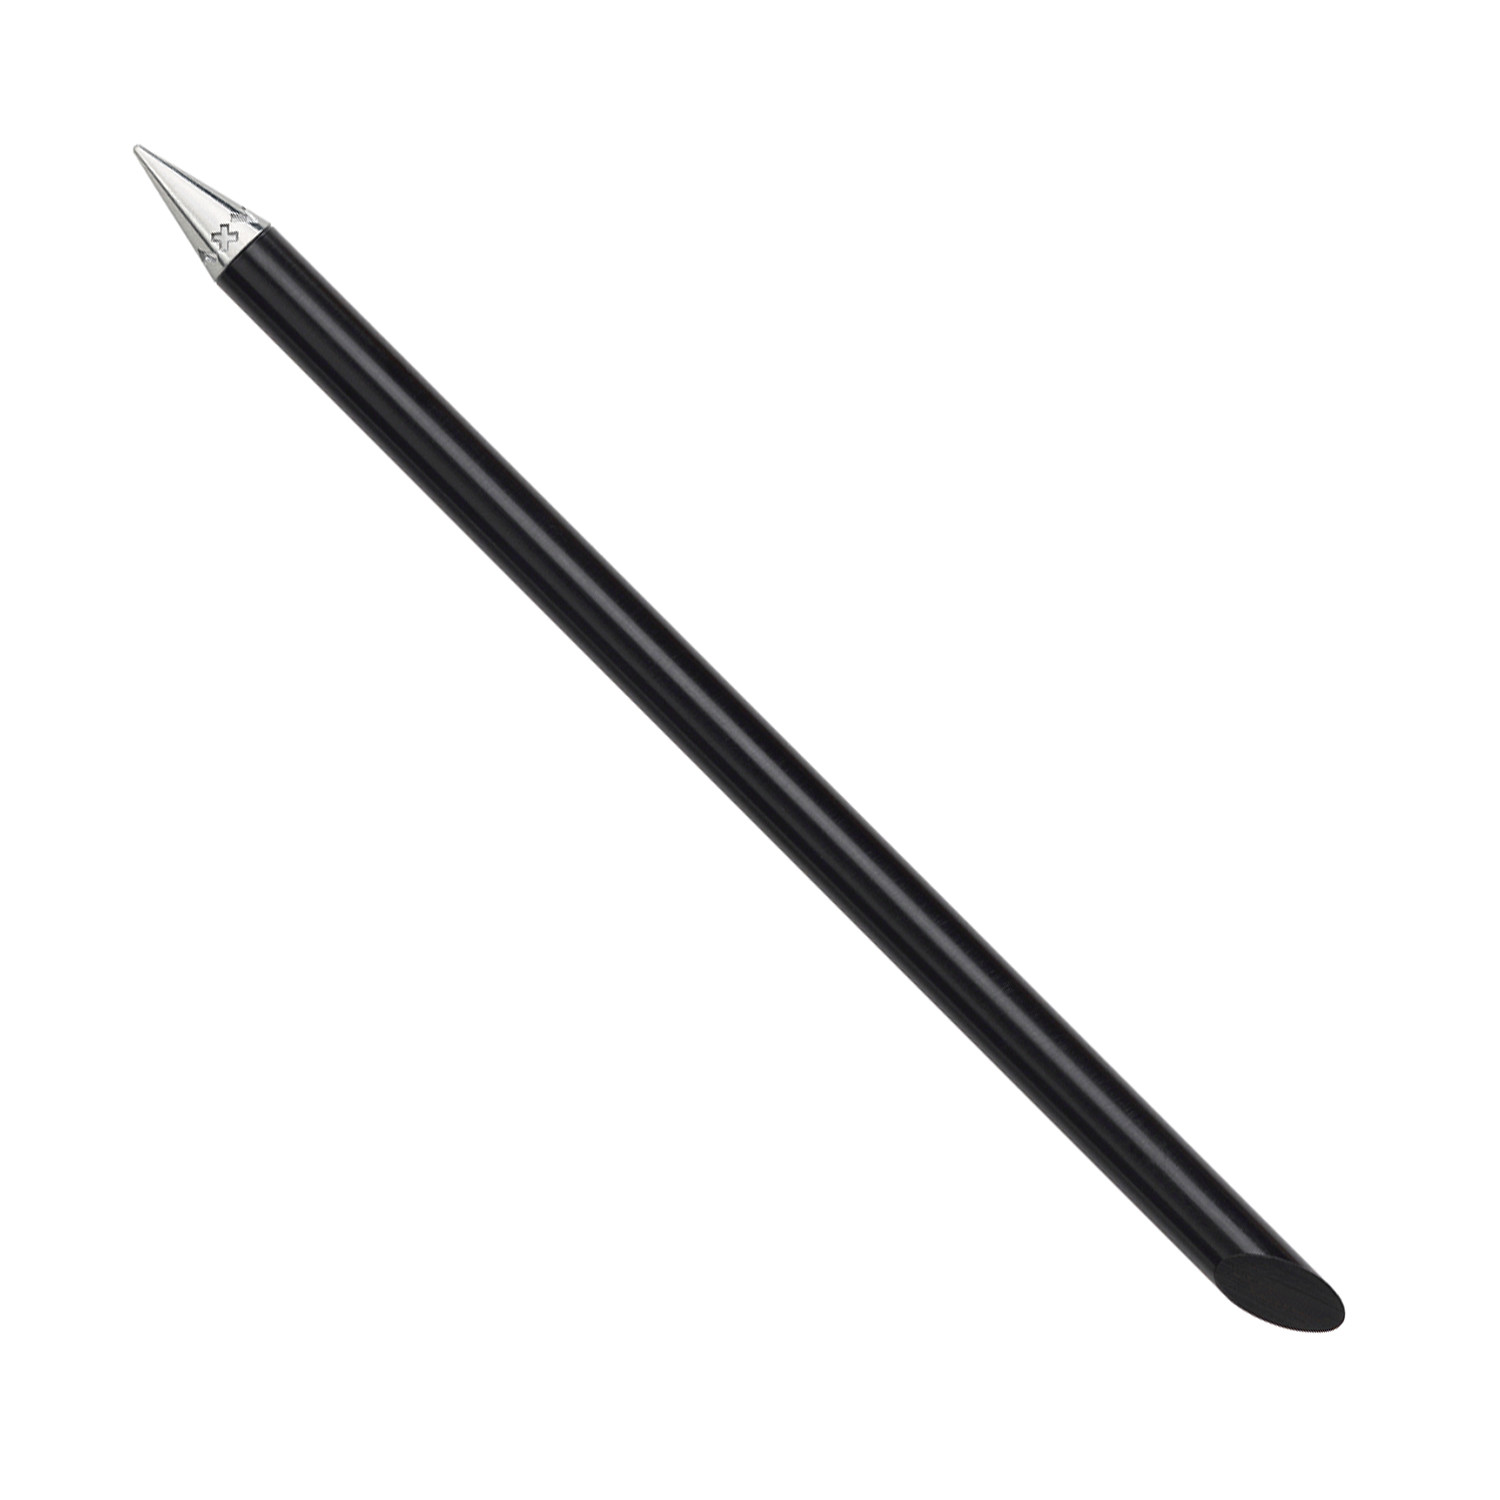 Inkless forever capacitive pen